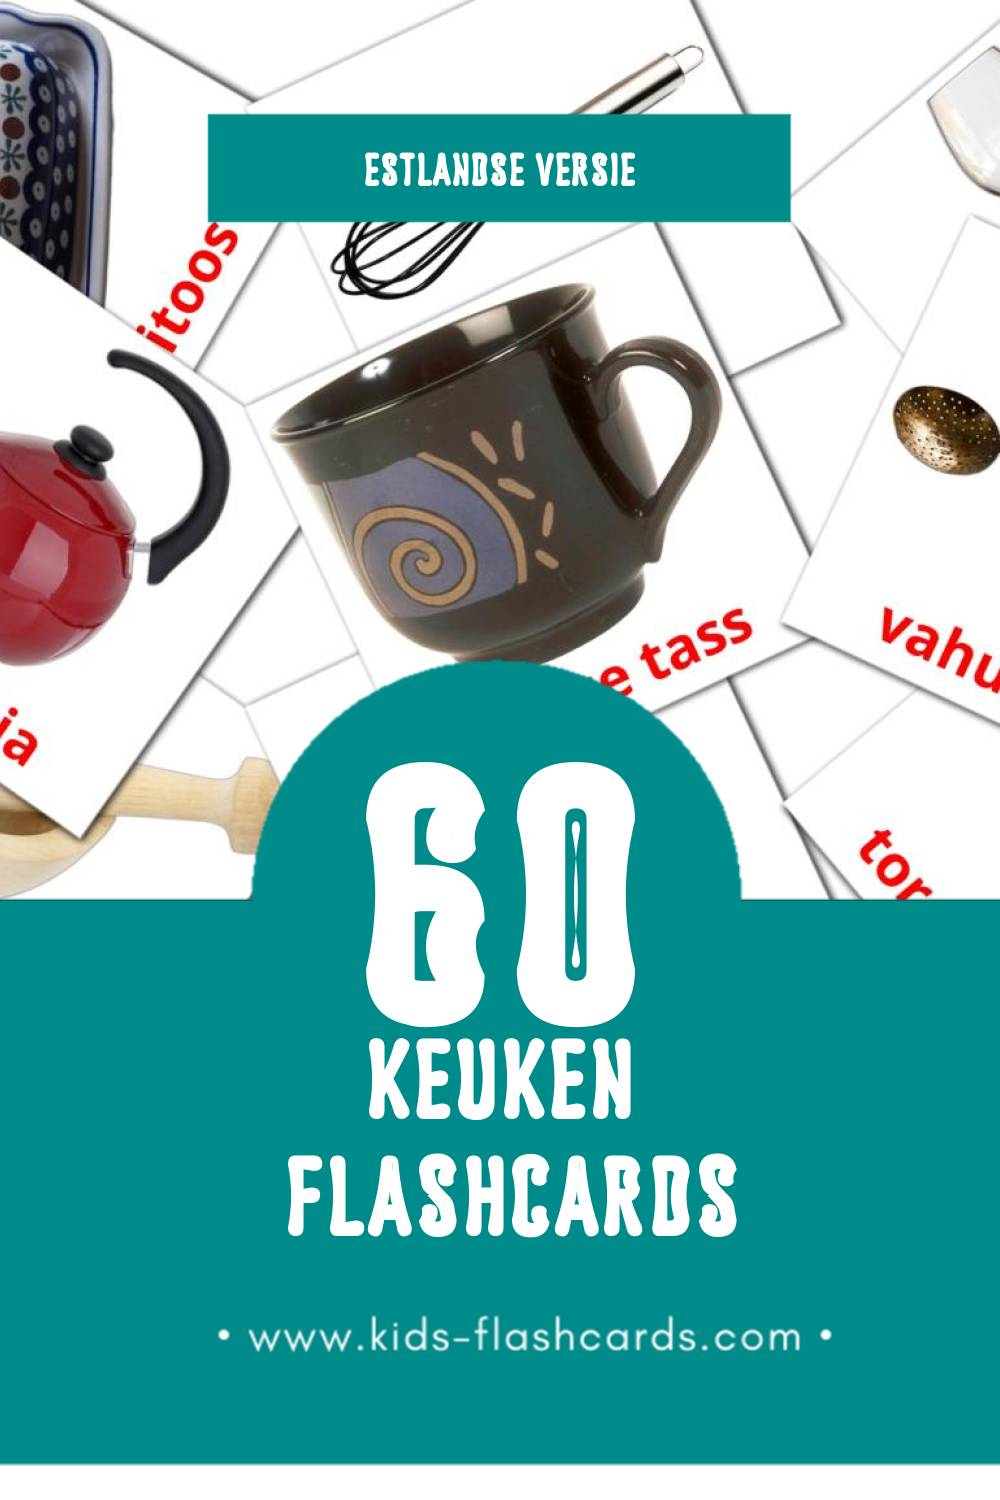 Visuele Köök Flashcards voor Kleuters (60 kaarten in het Estlands)